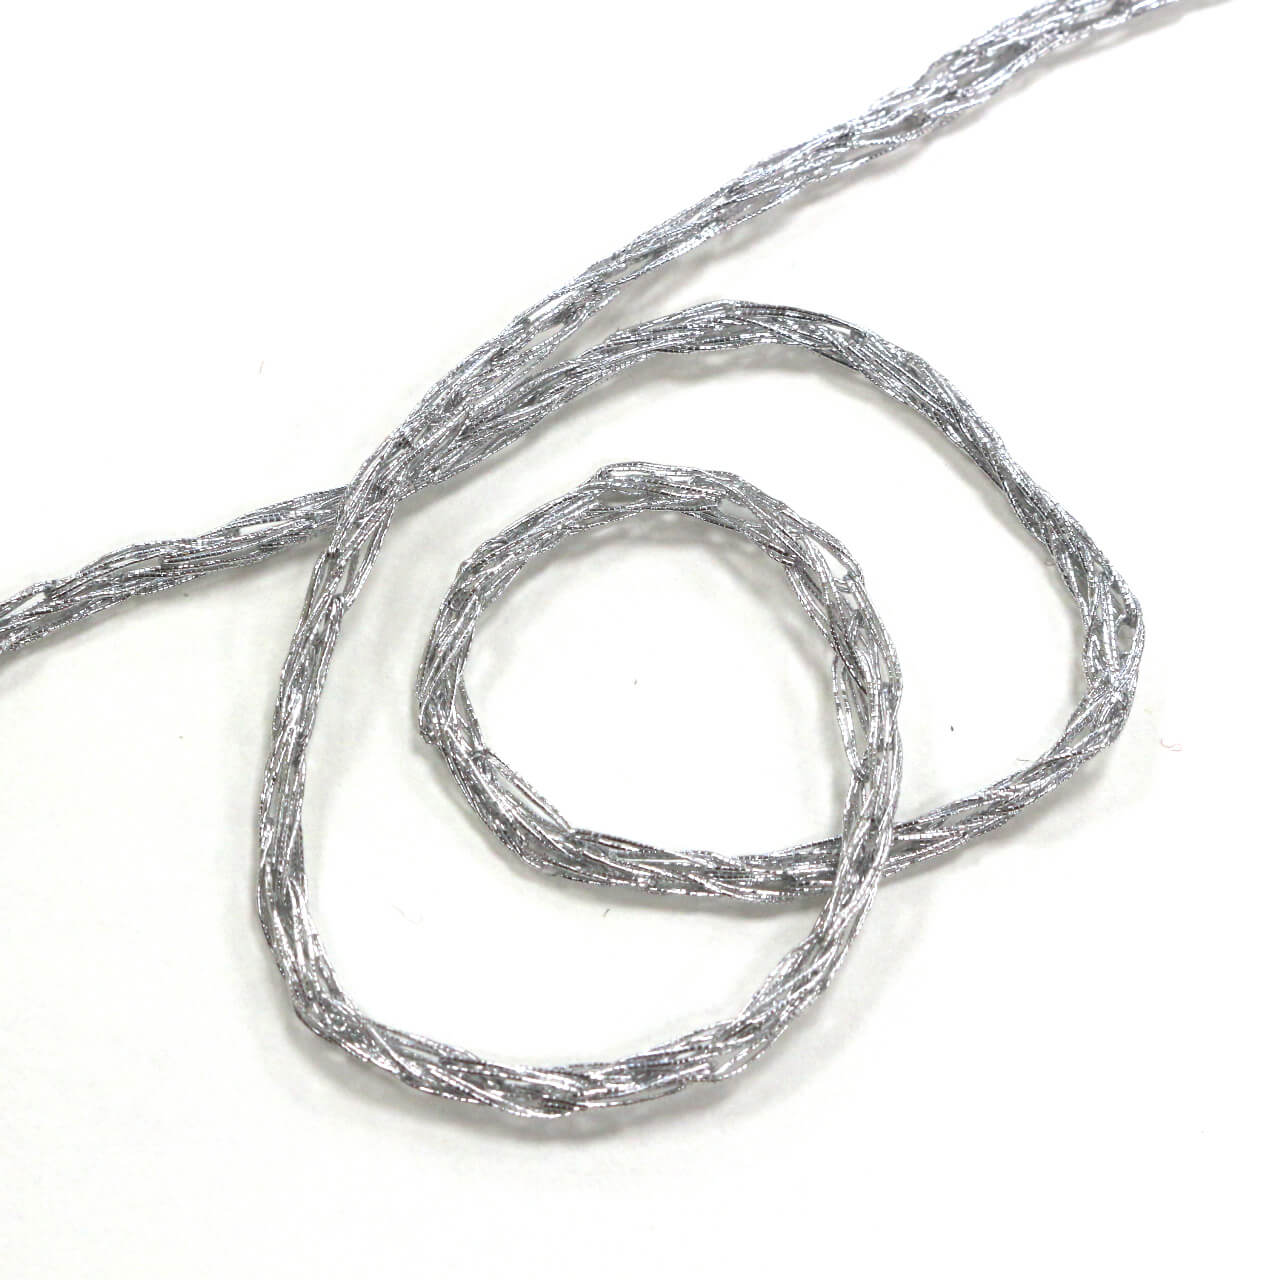 Декоративный фактурный шнур 0.4 см, цвет Серебро, фото 1